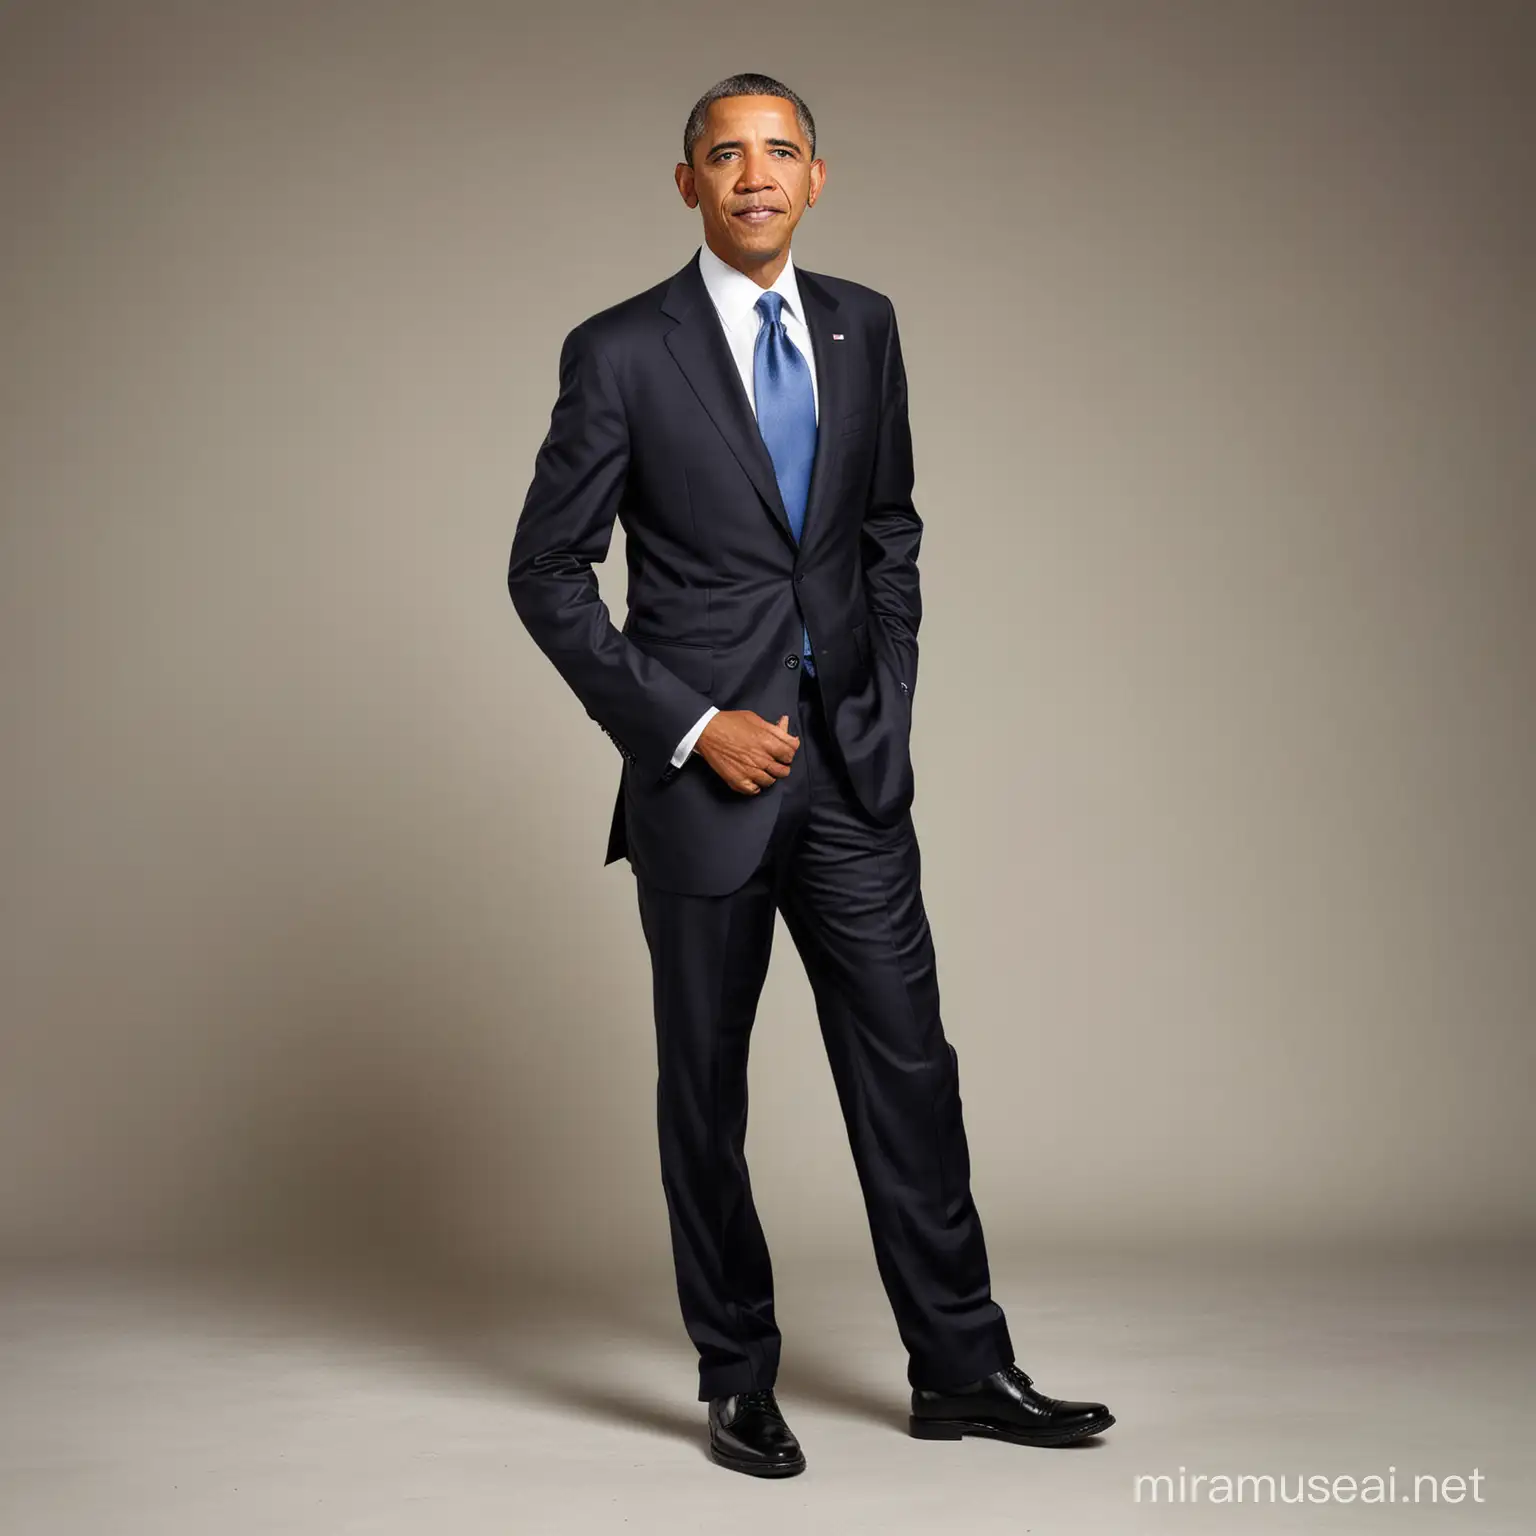 goofy photo of obama full body profile